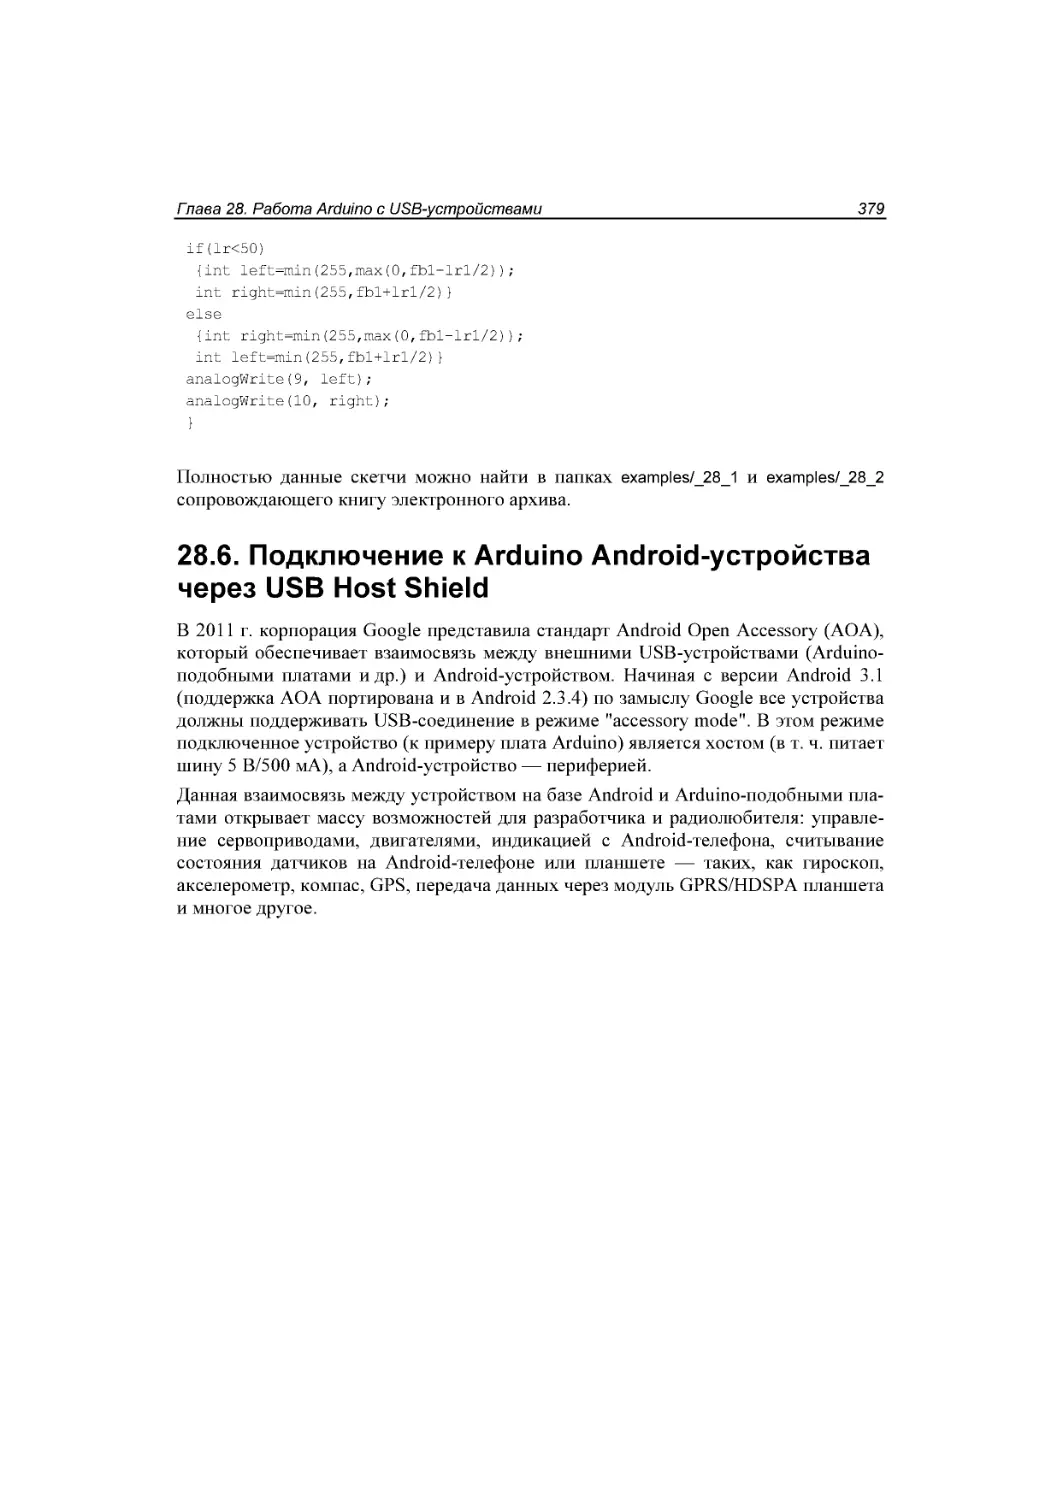 ﻿28.6. Подключение к Arduino Android-устройства через USB Host Shield